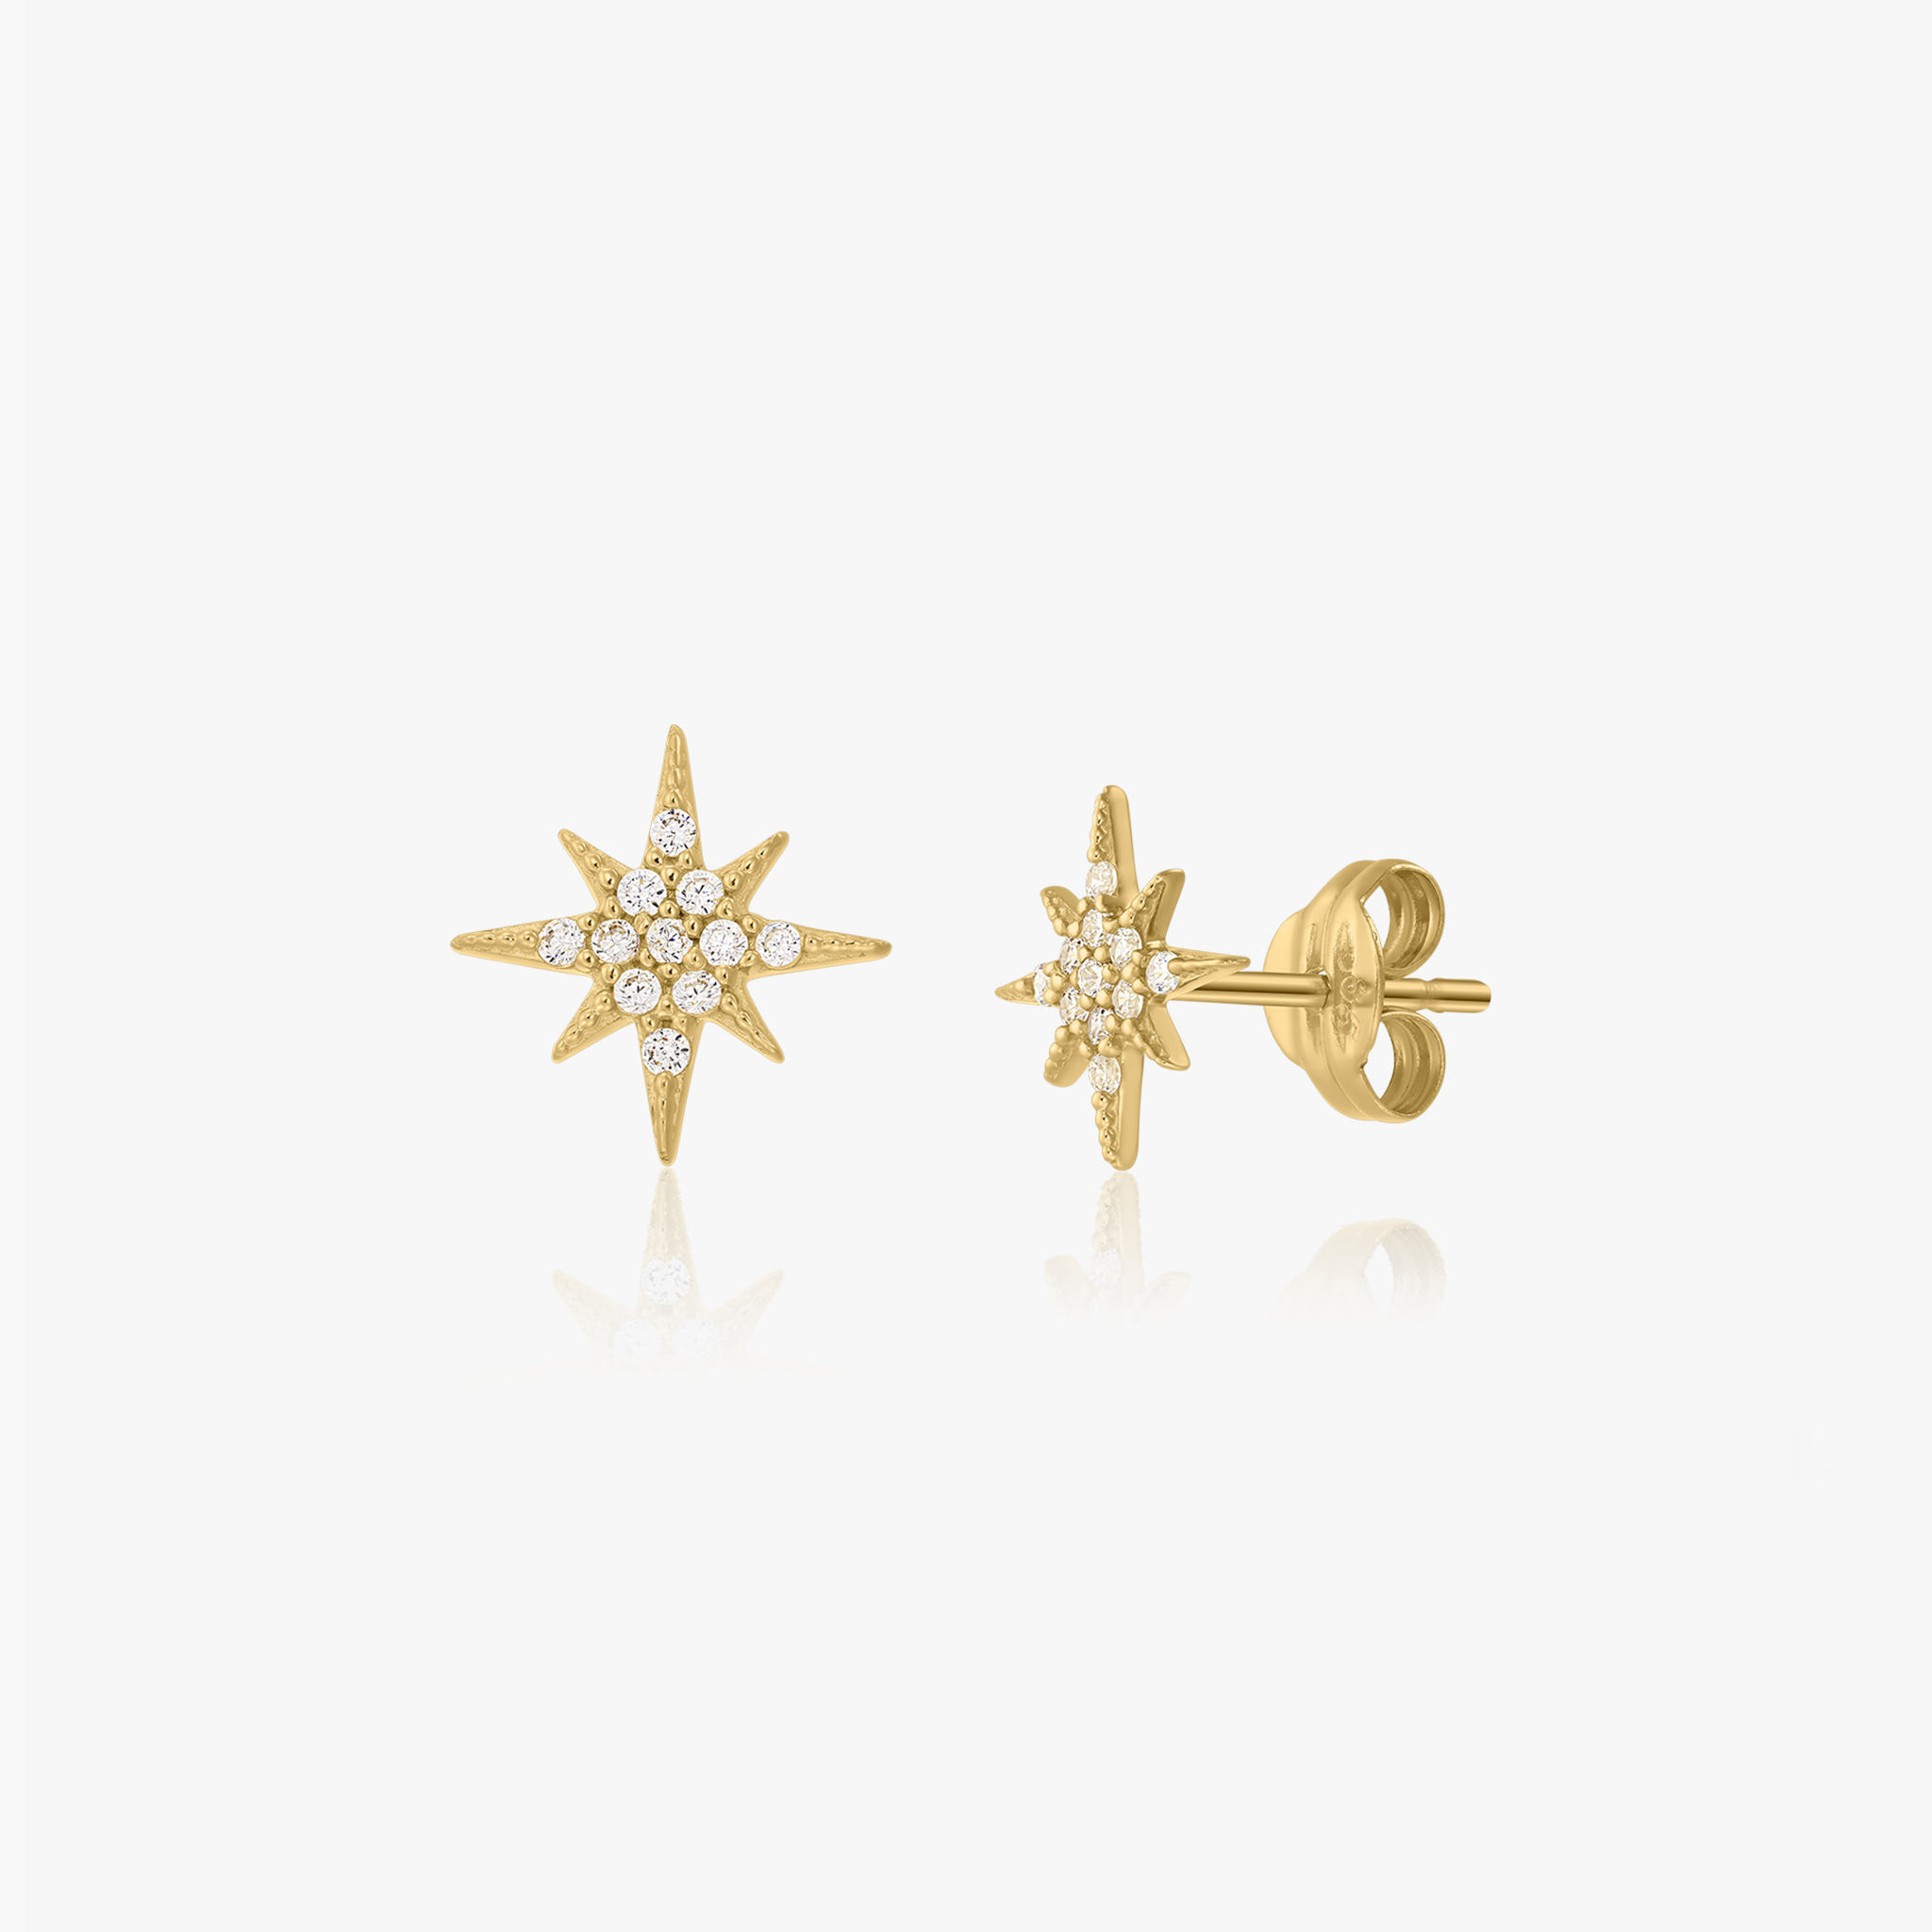 Morningstar gold earrings - Zirconium